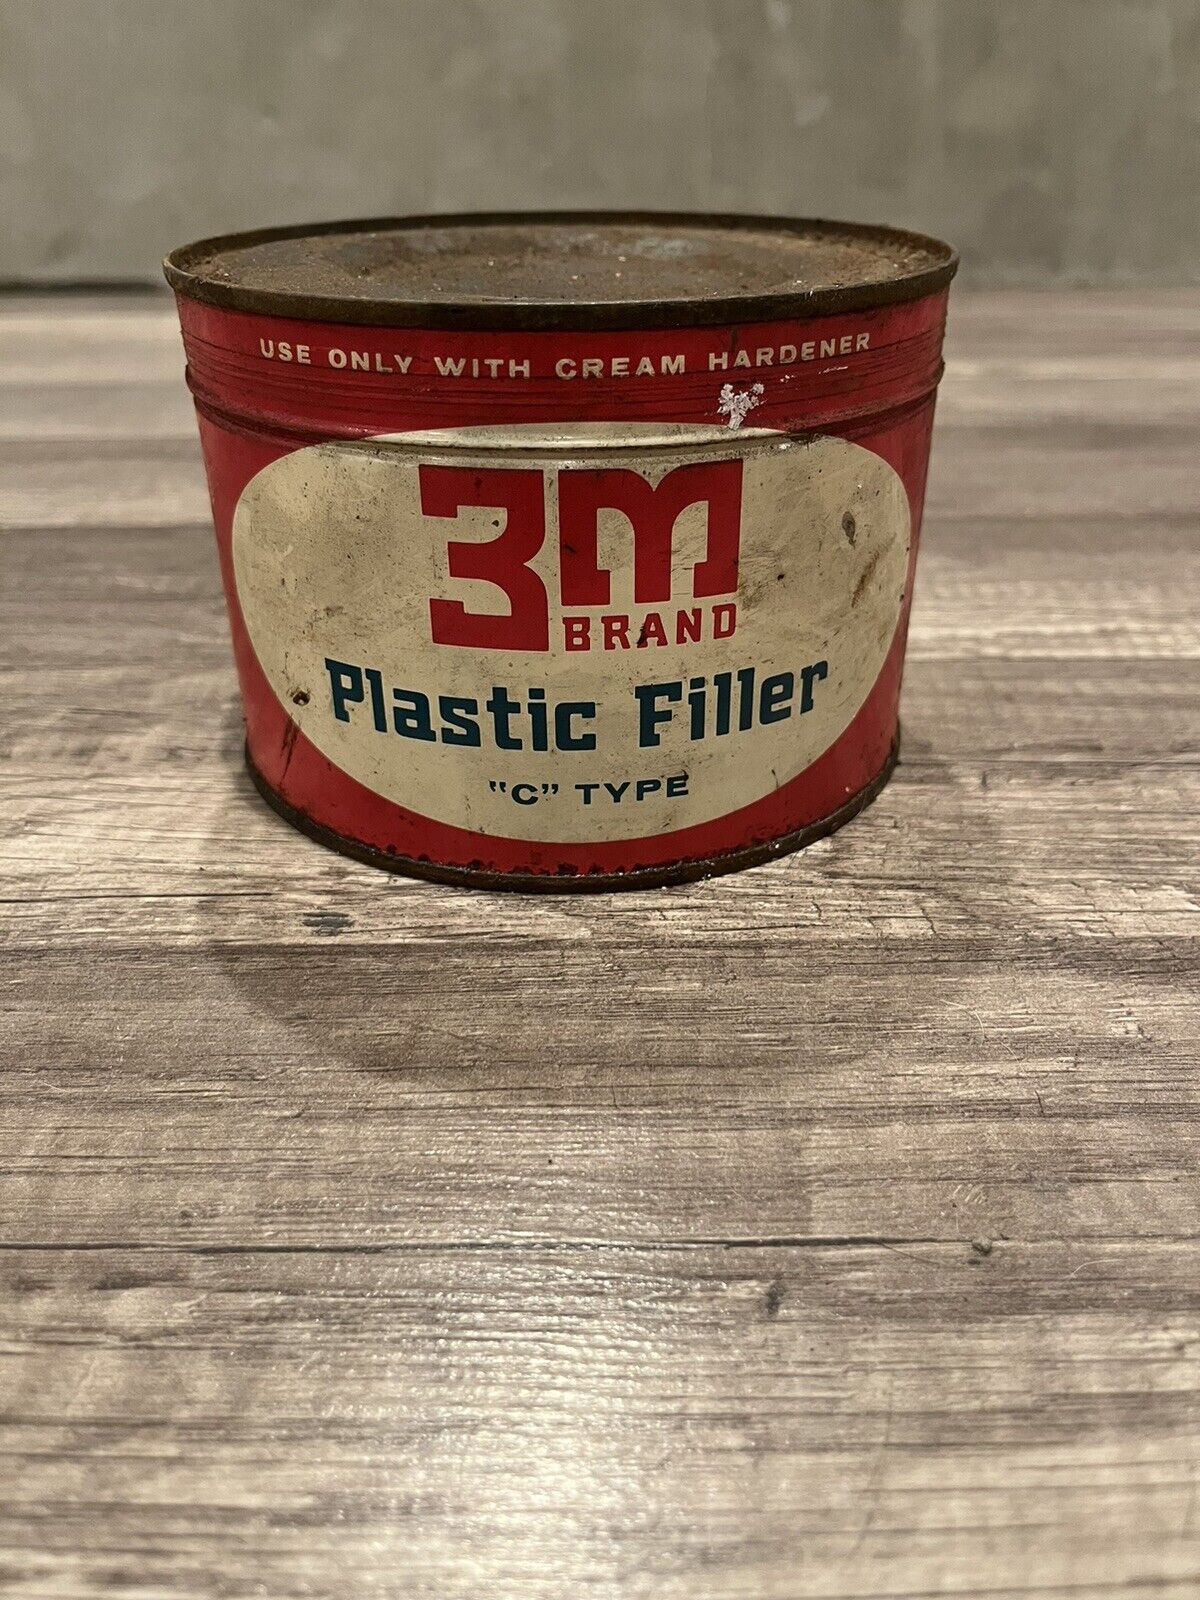 Vintage 3M Brand Plastic Filler Can